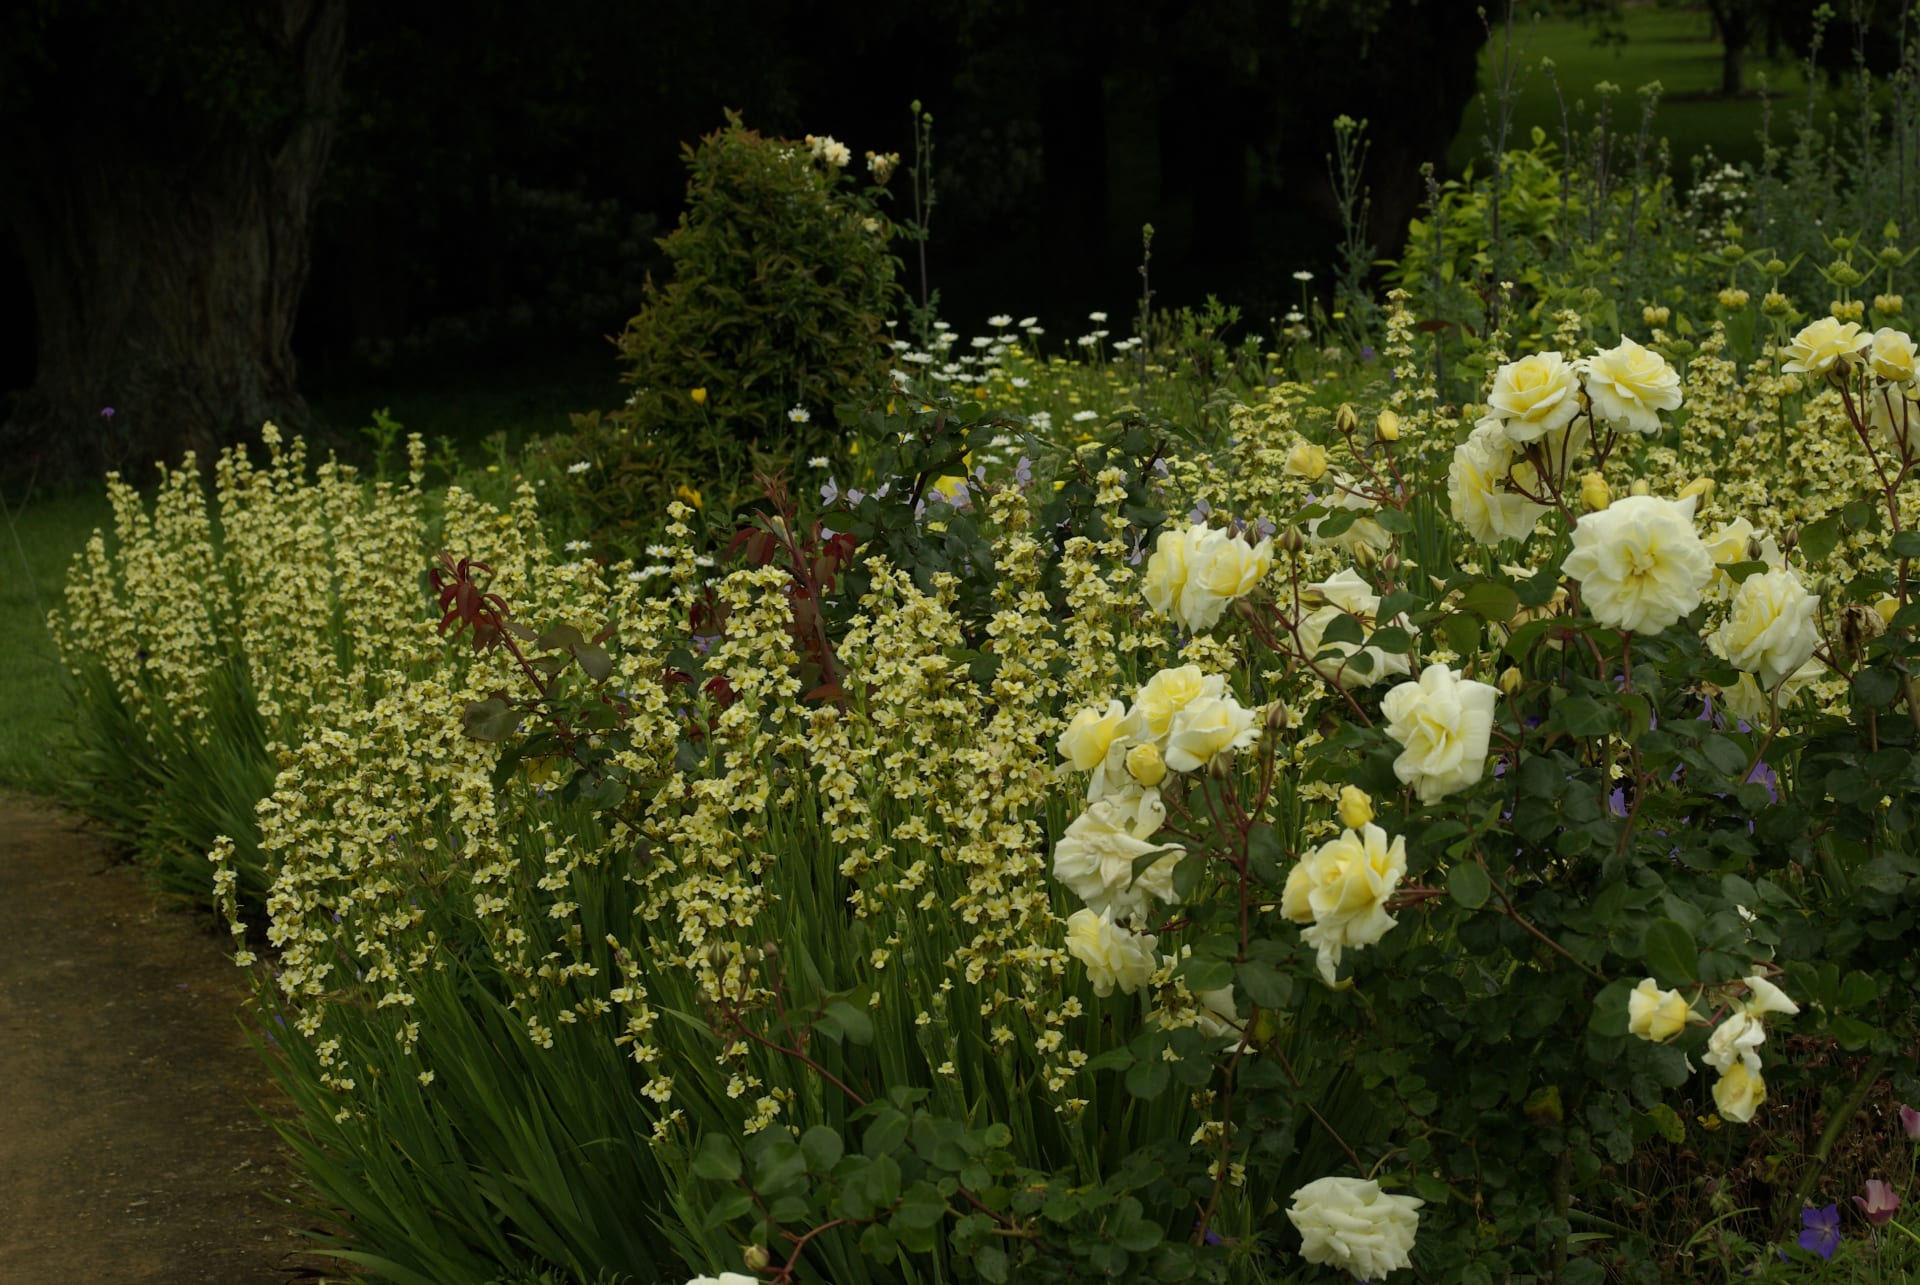 Divoký záhon vyladěný do žluté barvy. Základními druhy jsou keřové růže a badil (Sisyrinchium Striatum)